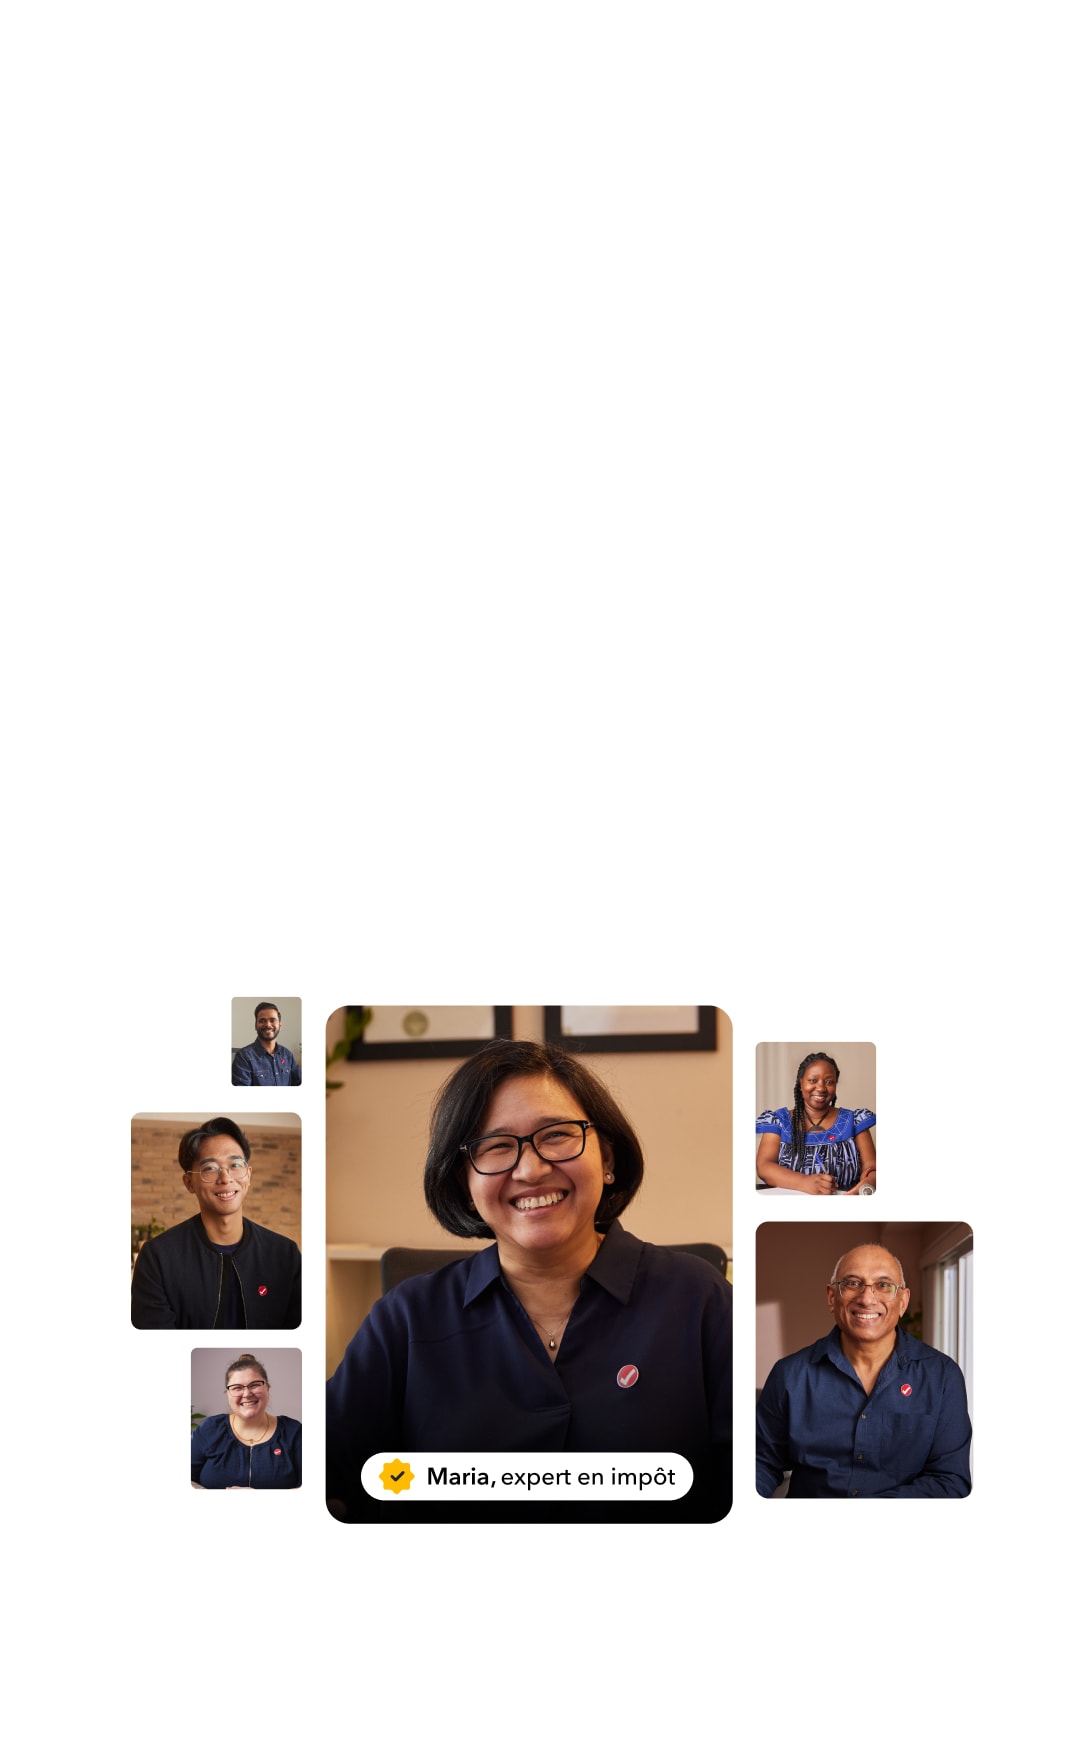 Une image de six experts de TurboImpôt souriant dans leur espace de travail respectif.